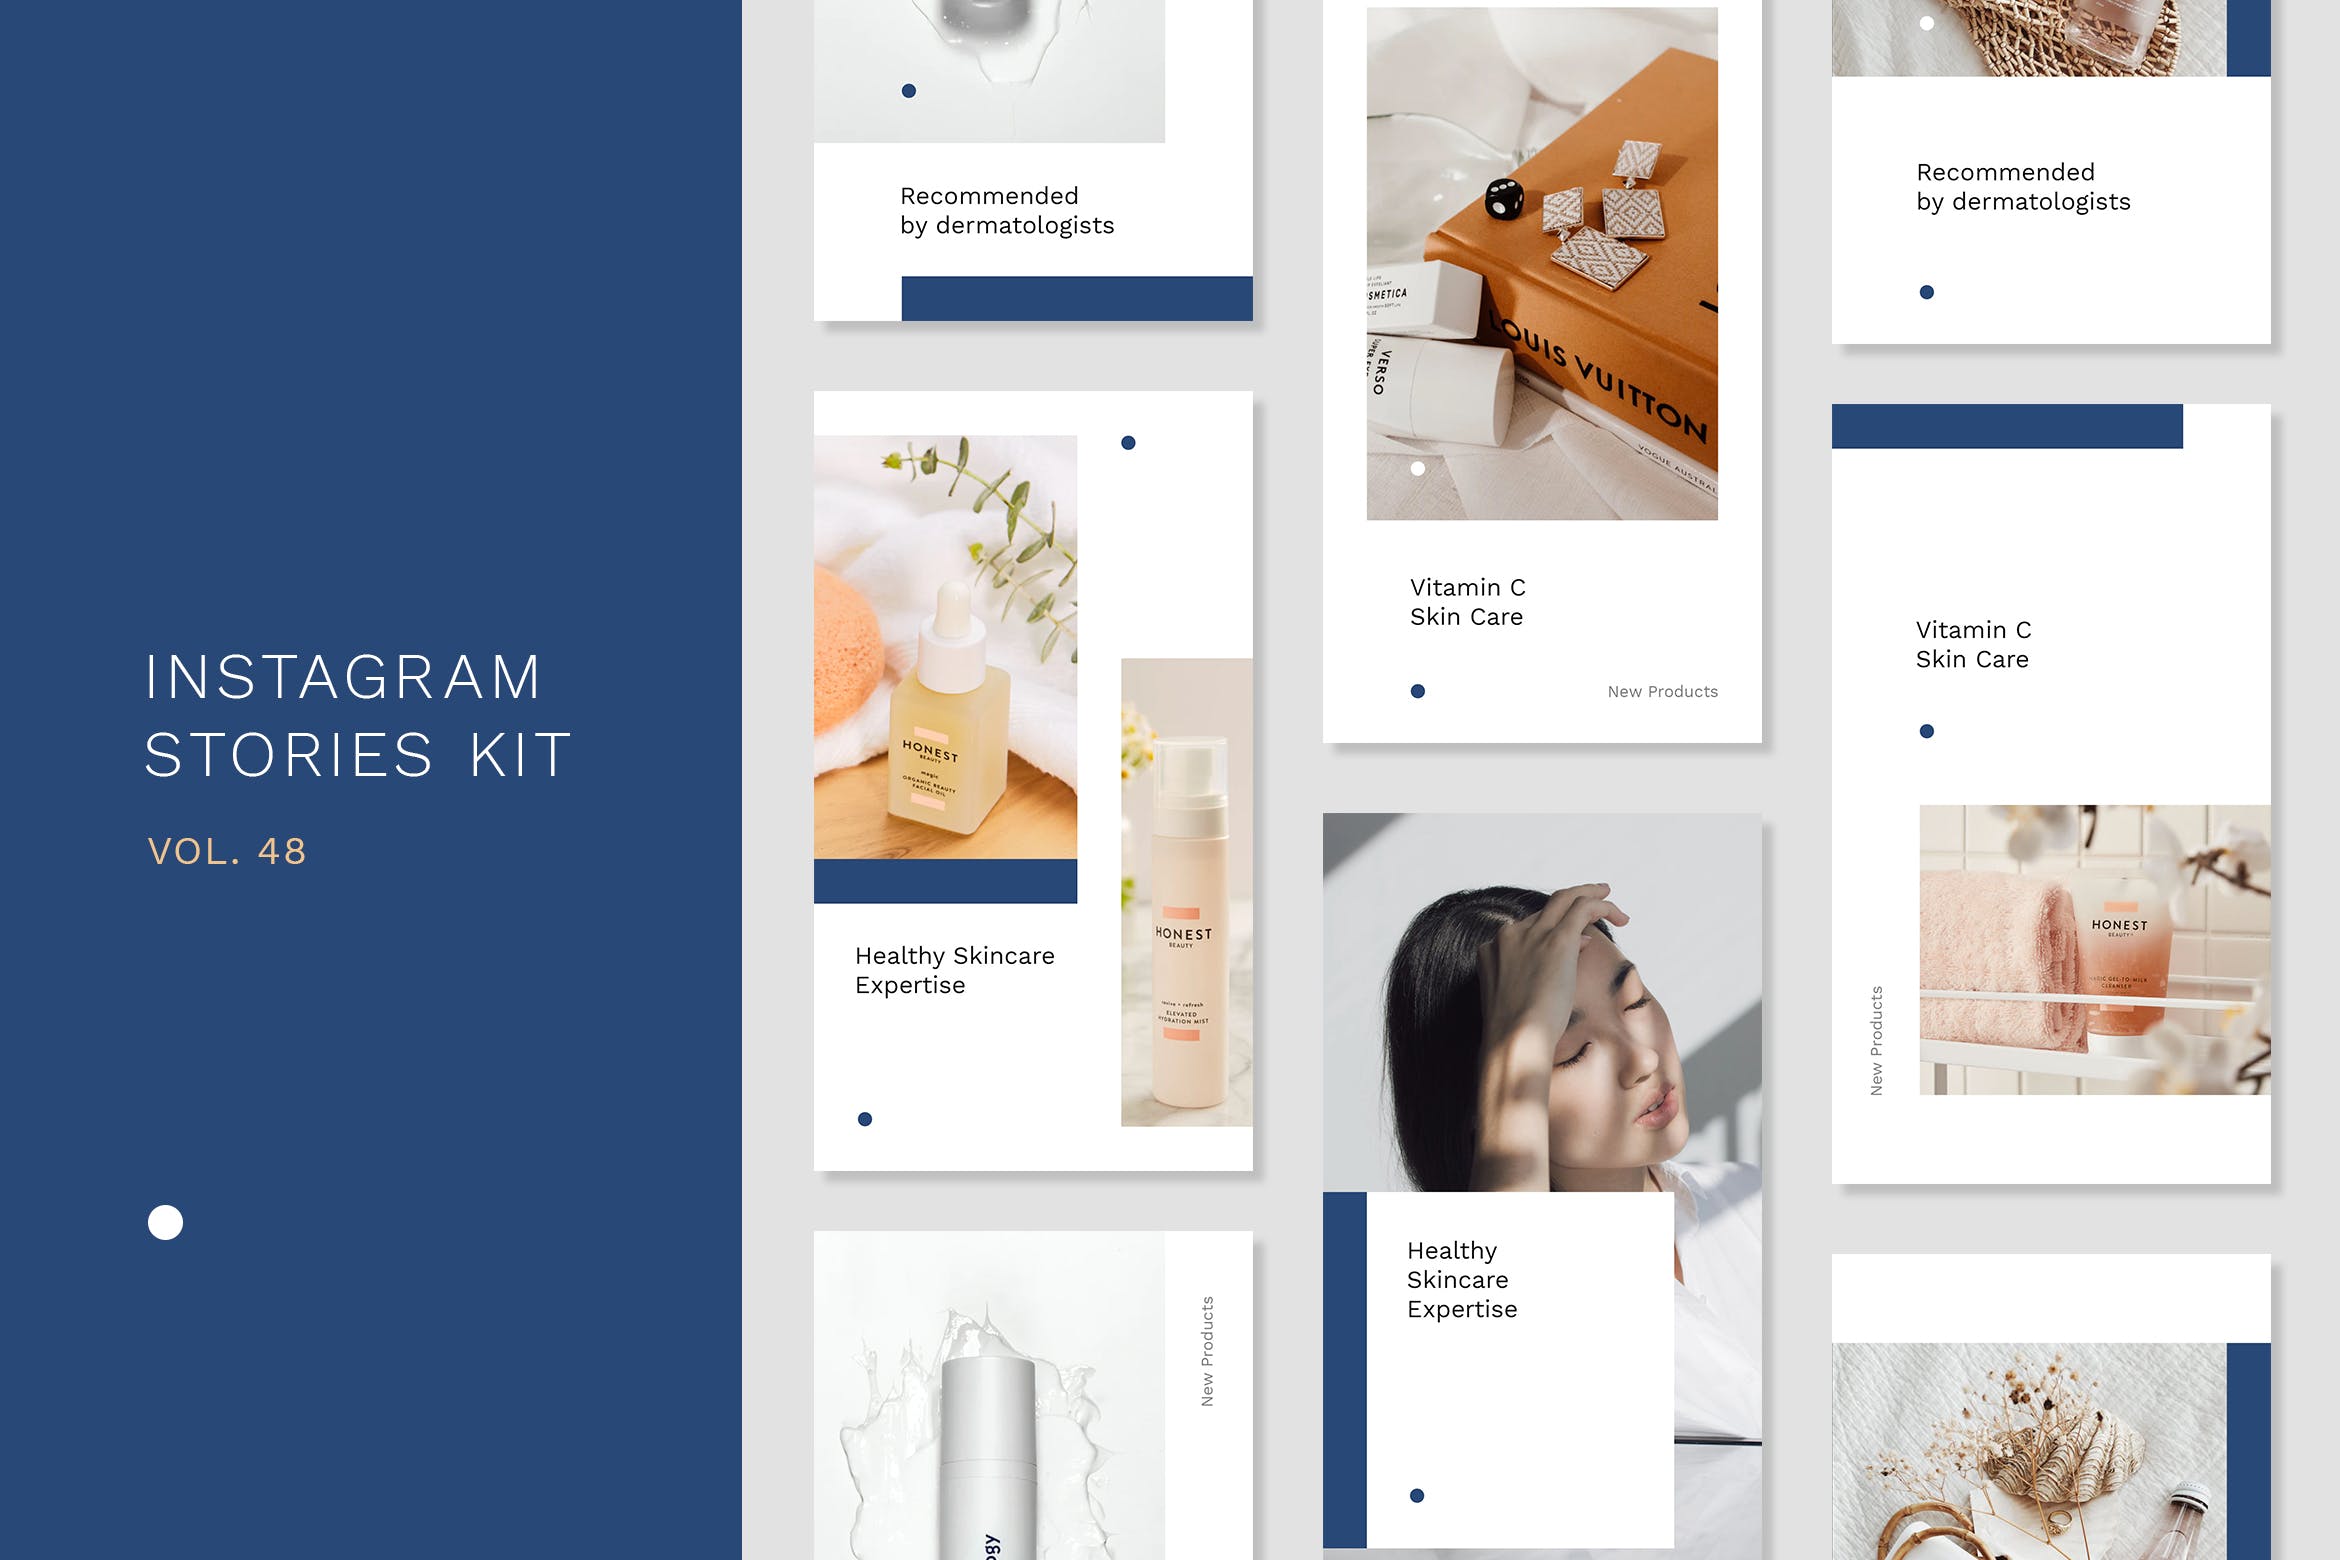 美妆品牌活动推广Instagram社交媒体设计素材包 Instagram Stories Kit (Vol.48)设计素材模板